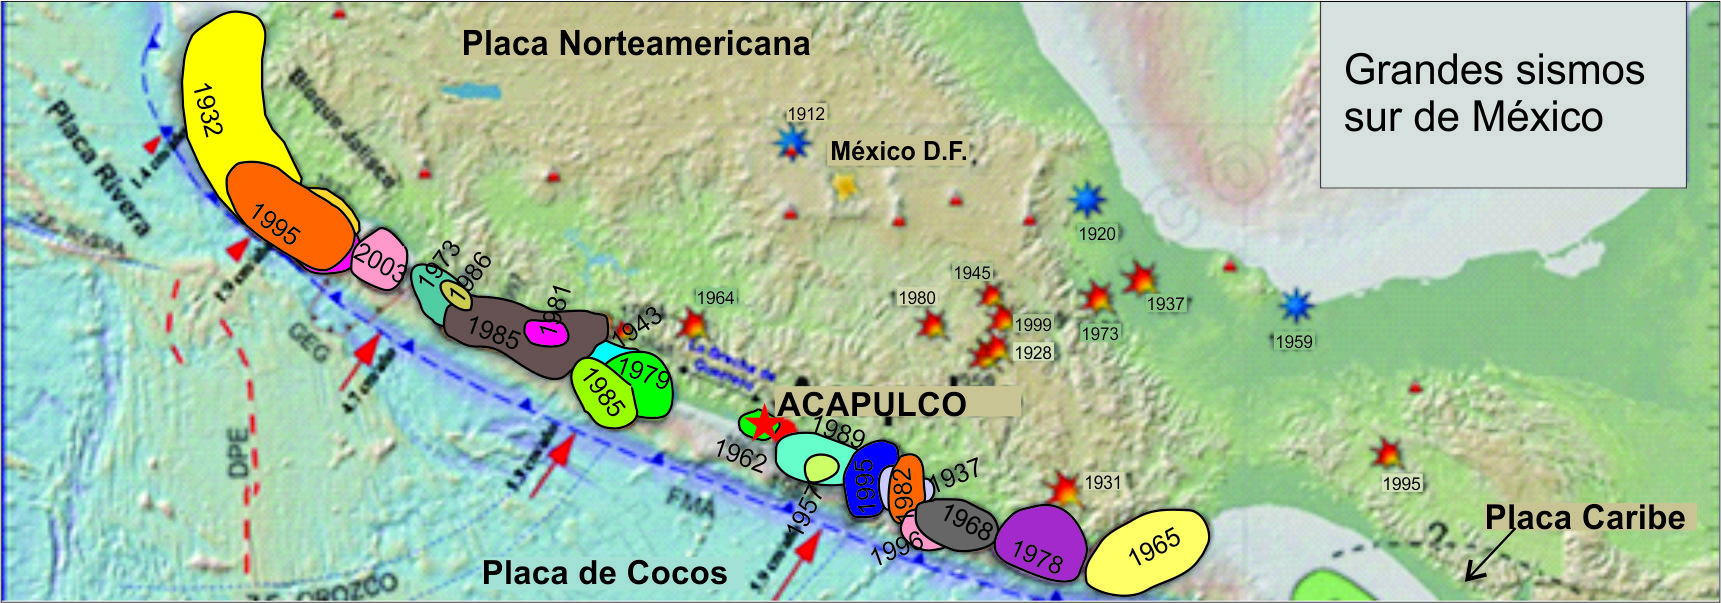 Mapa Sismos sur de Mexico 2